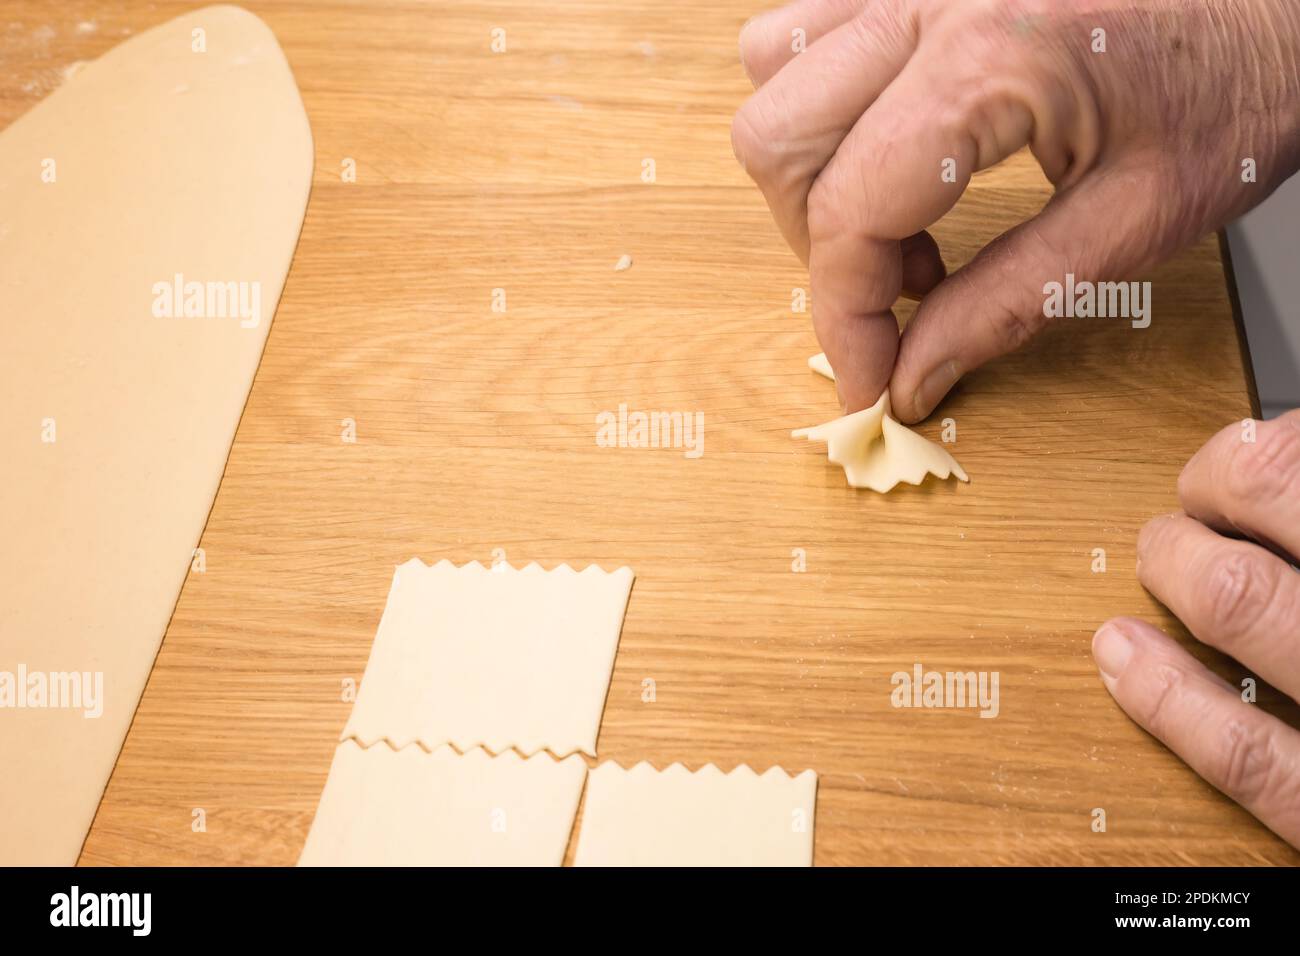 Herstellung hausgemachter Nudeln – italienische Nudeln (Farfalle) in heimwerkerarbeit – Nahaufnahme einer Hand, die den Teig zur Zubereitung selbstgemachter Farfalle-Nudeln presst Stockfoto